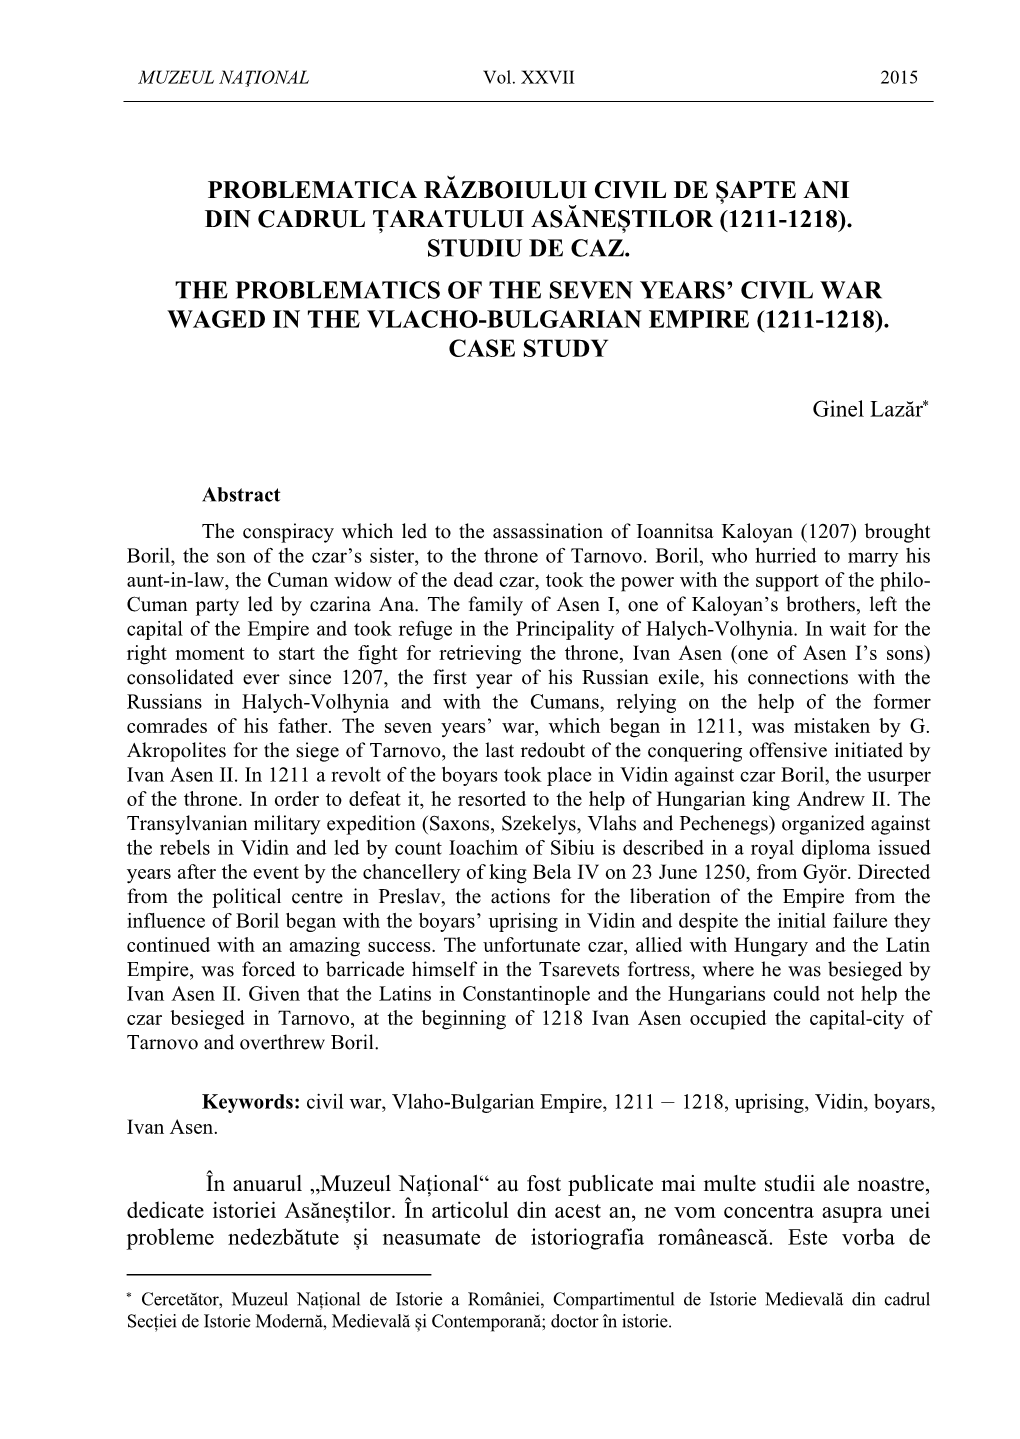 Problematica Războiului Civil De Șapte Ani Din Cadrul Țaratului Asăneștilor (1211-1218)